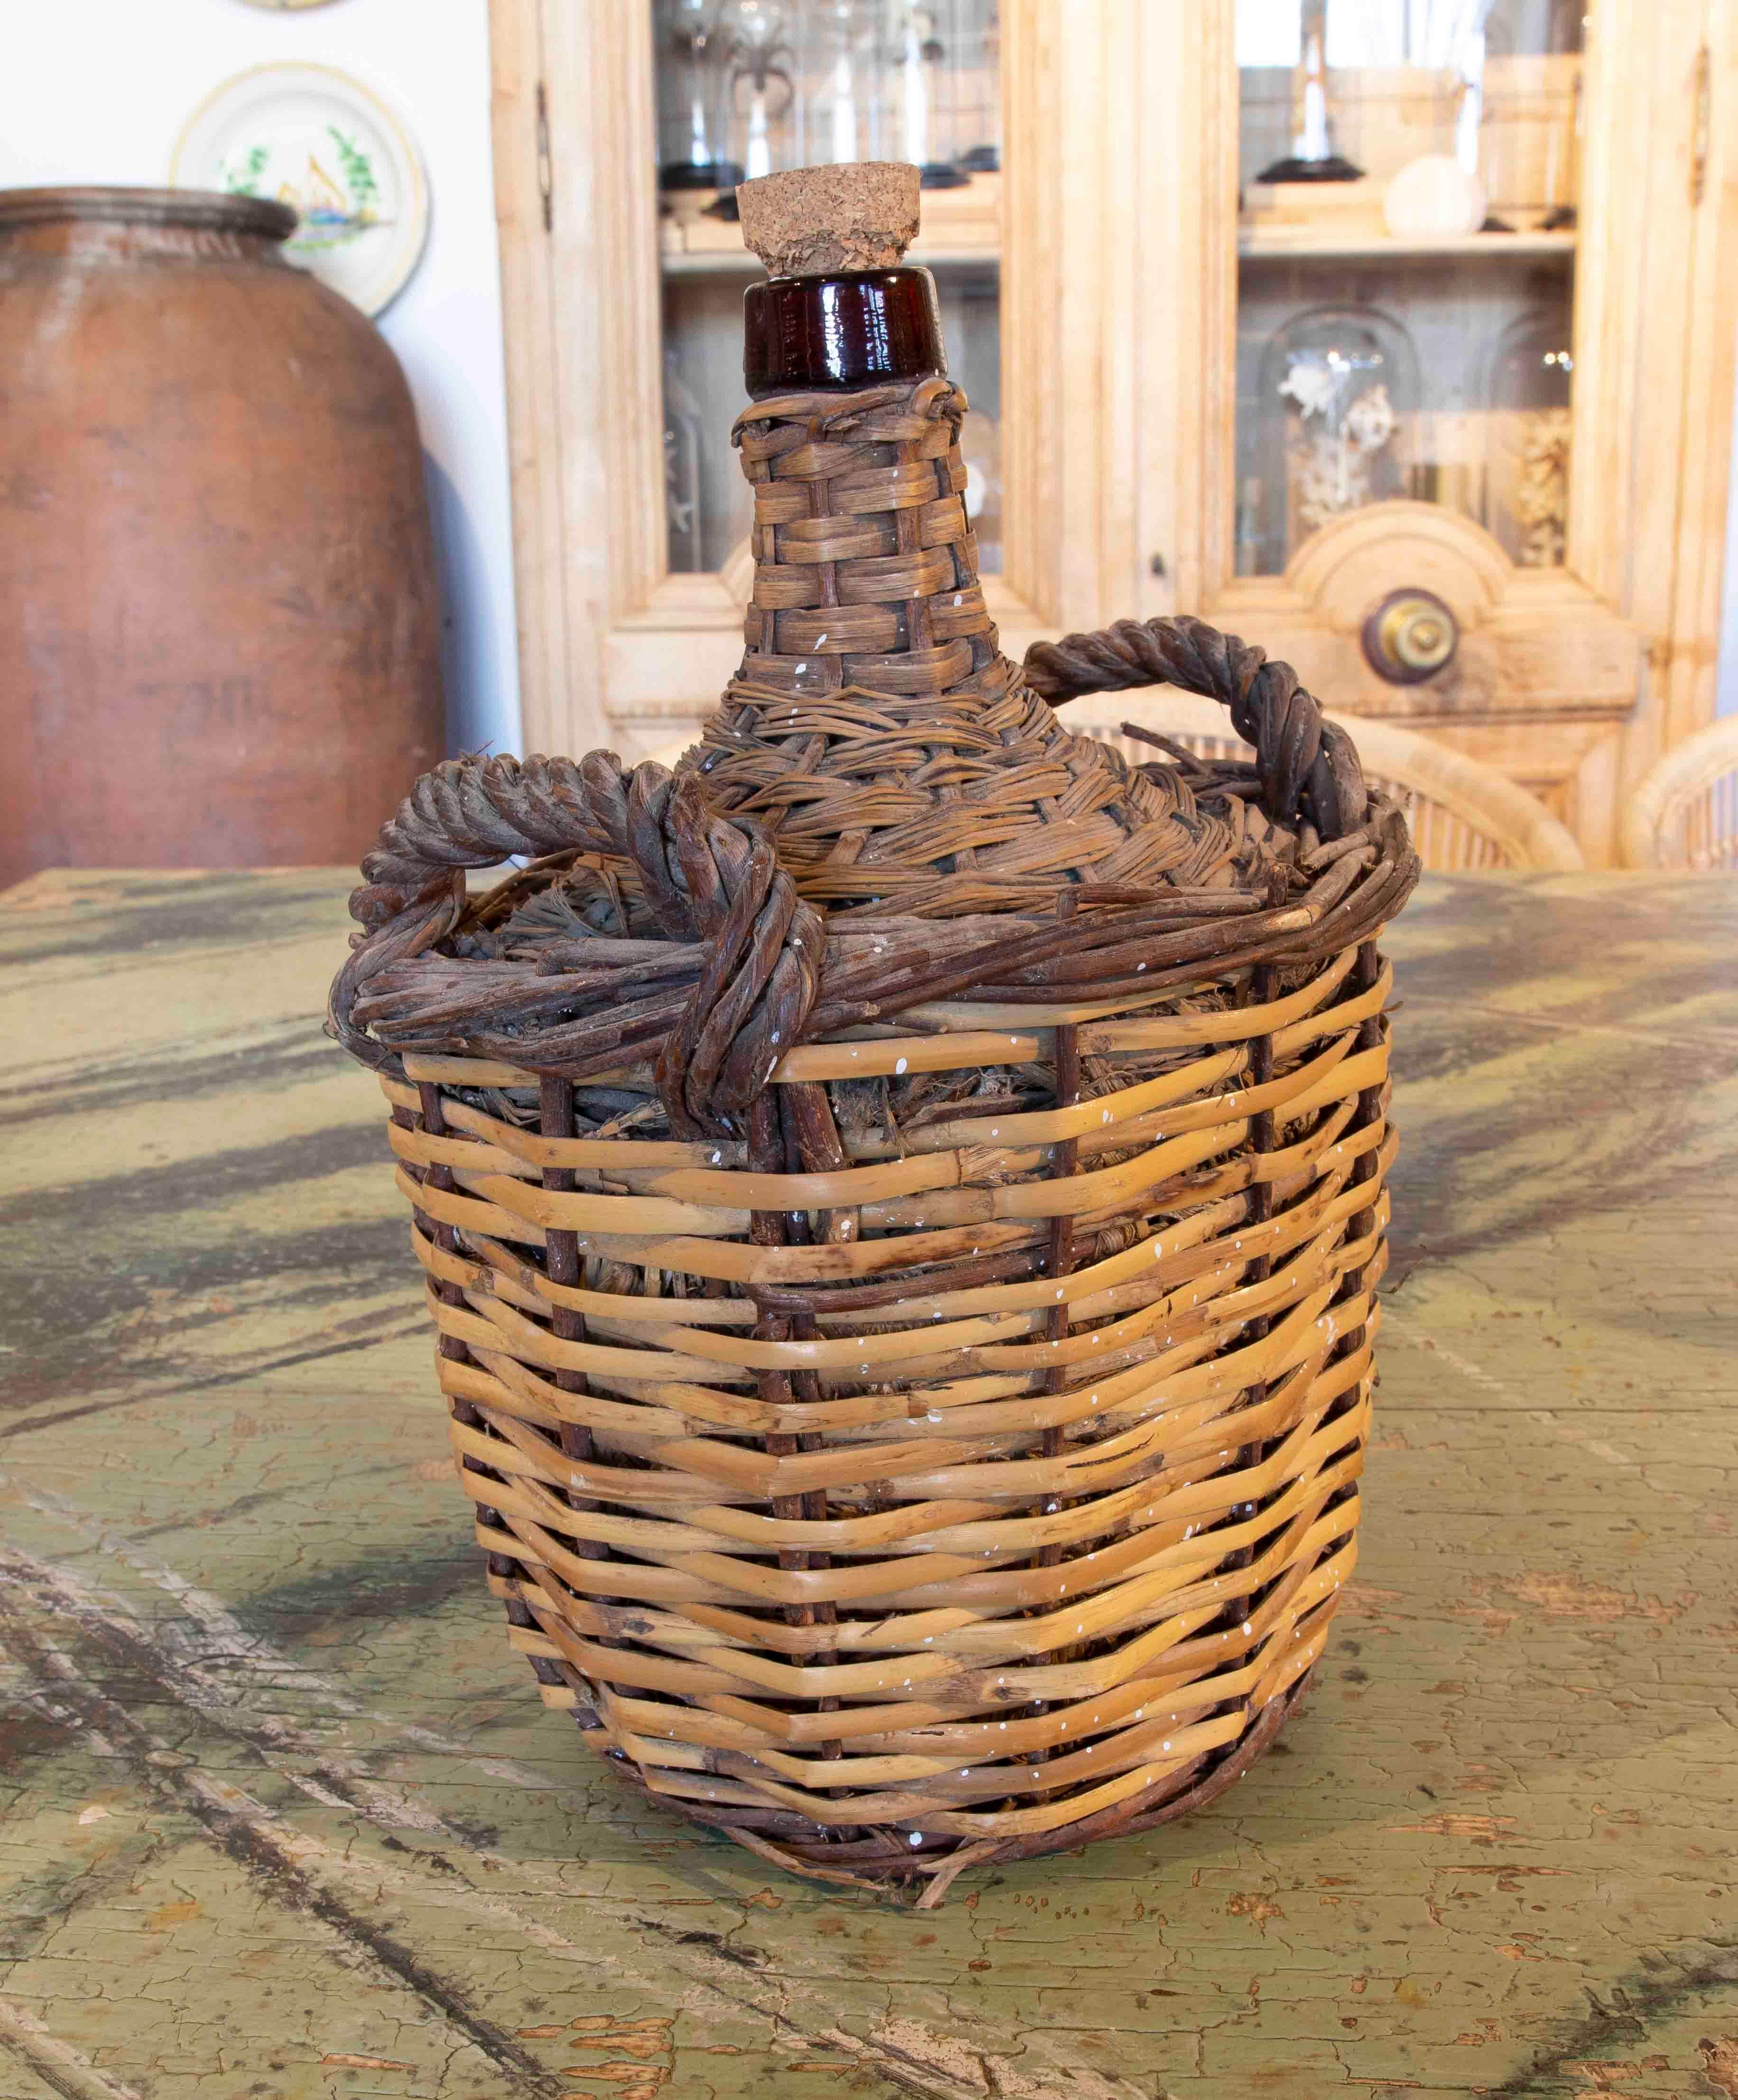 Weinhalter mit Weidengeflecht für Glasflaschen (20. Jahrhundert)